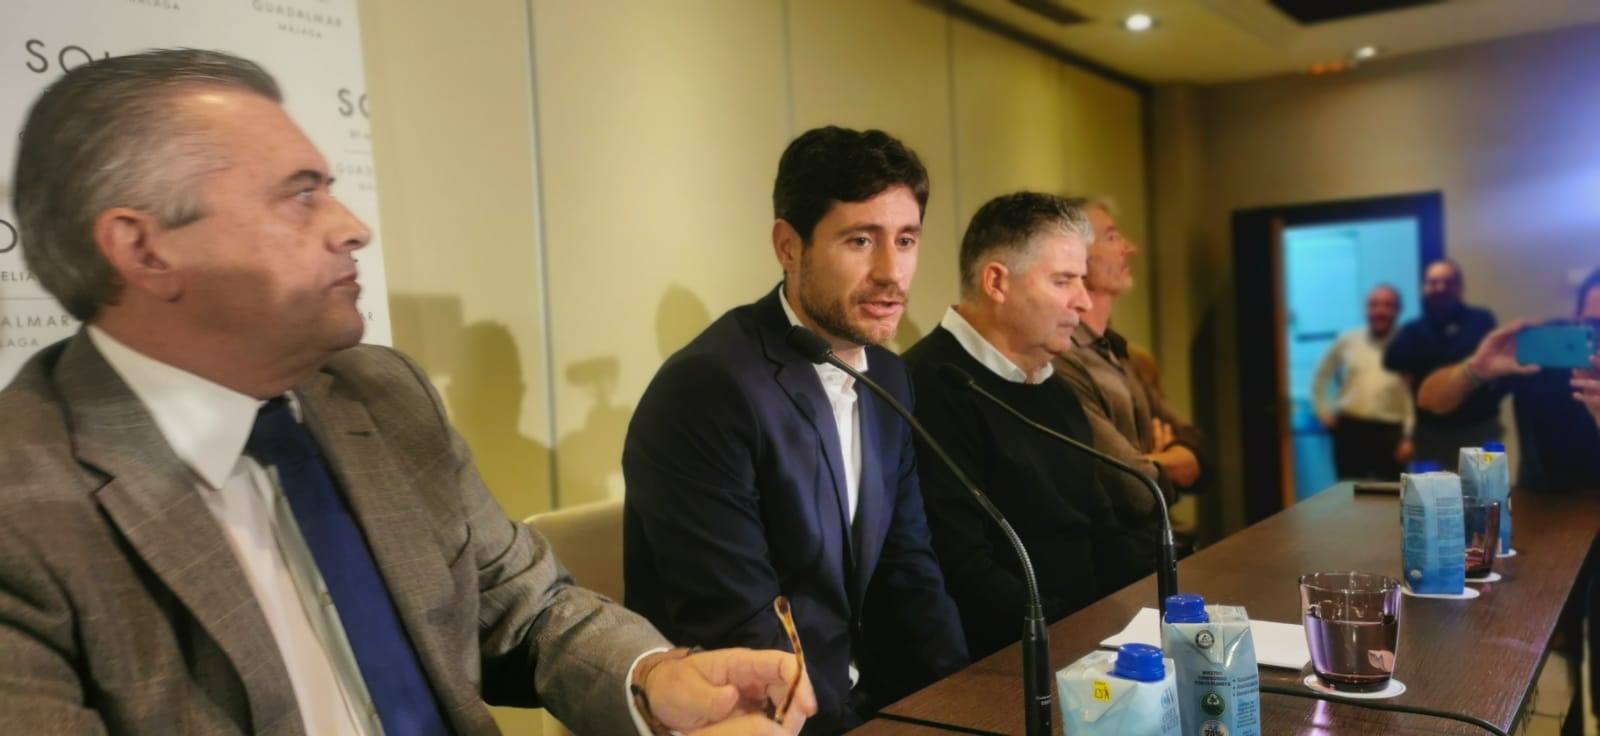 El técnico madrileño, junto a su abogado y sus ayudantes, compareció por primera vez tras dejar de ser entrenador del Málaga